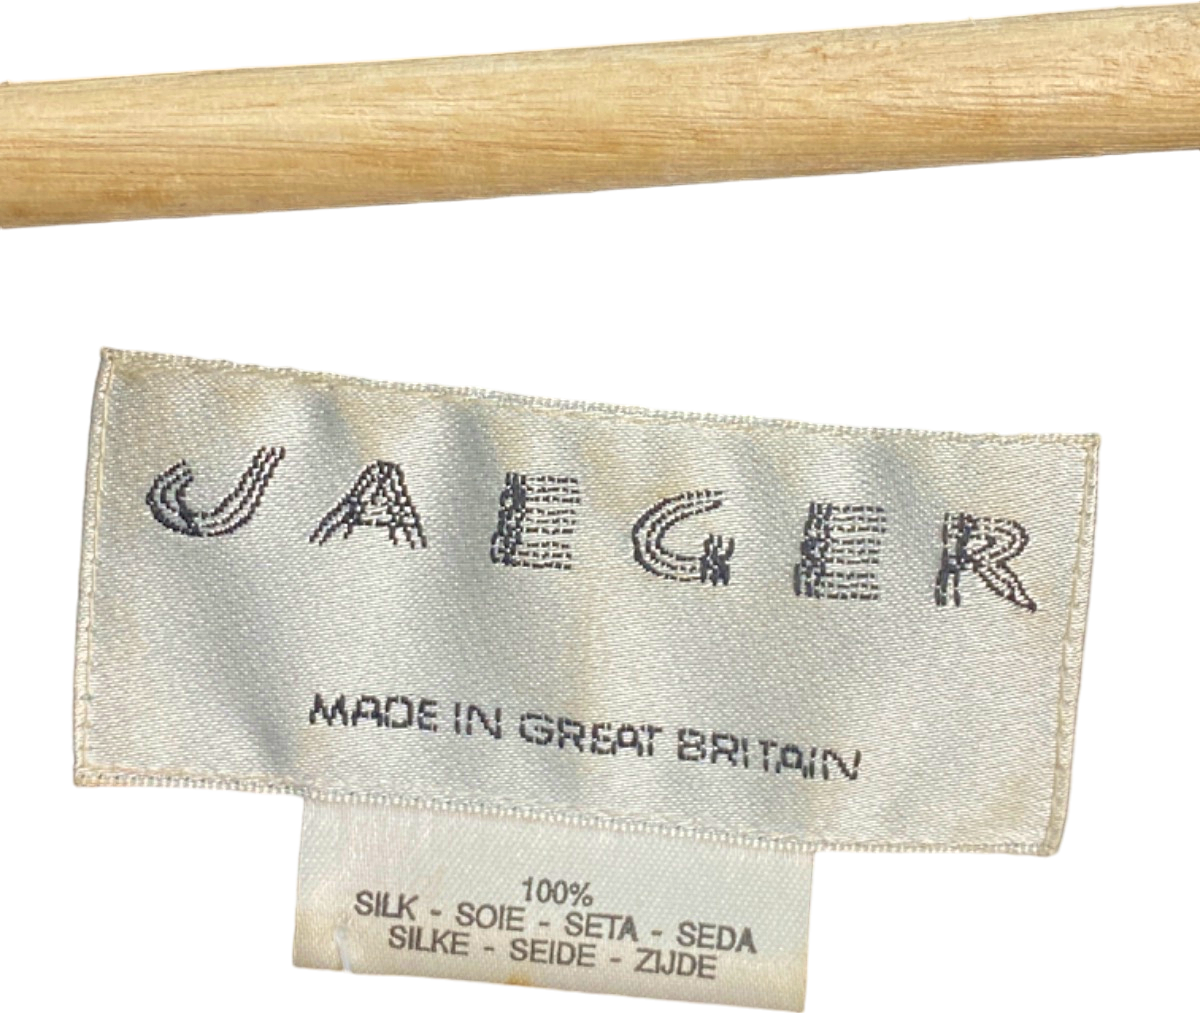 Jaeger Black/Gold Hand Embroidered Silk Jacket UK 14